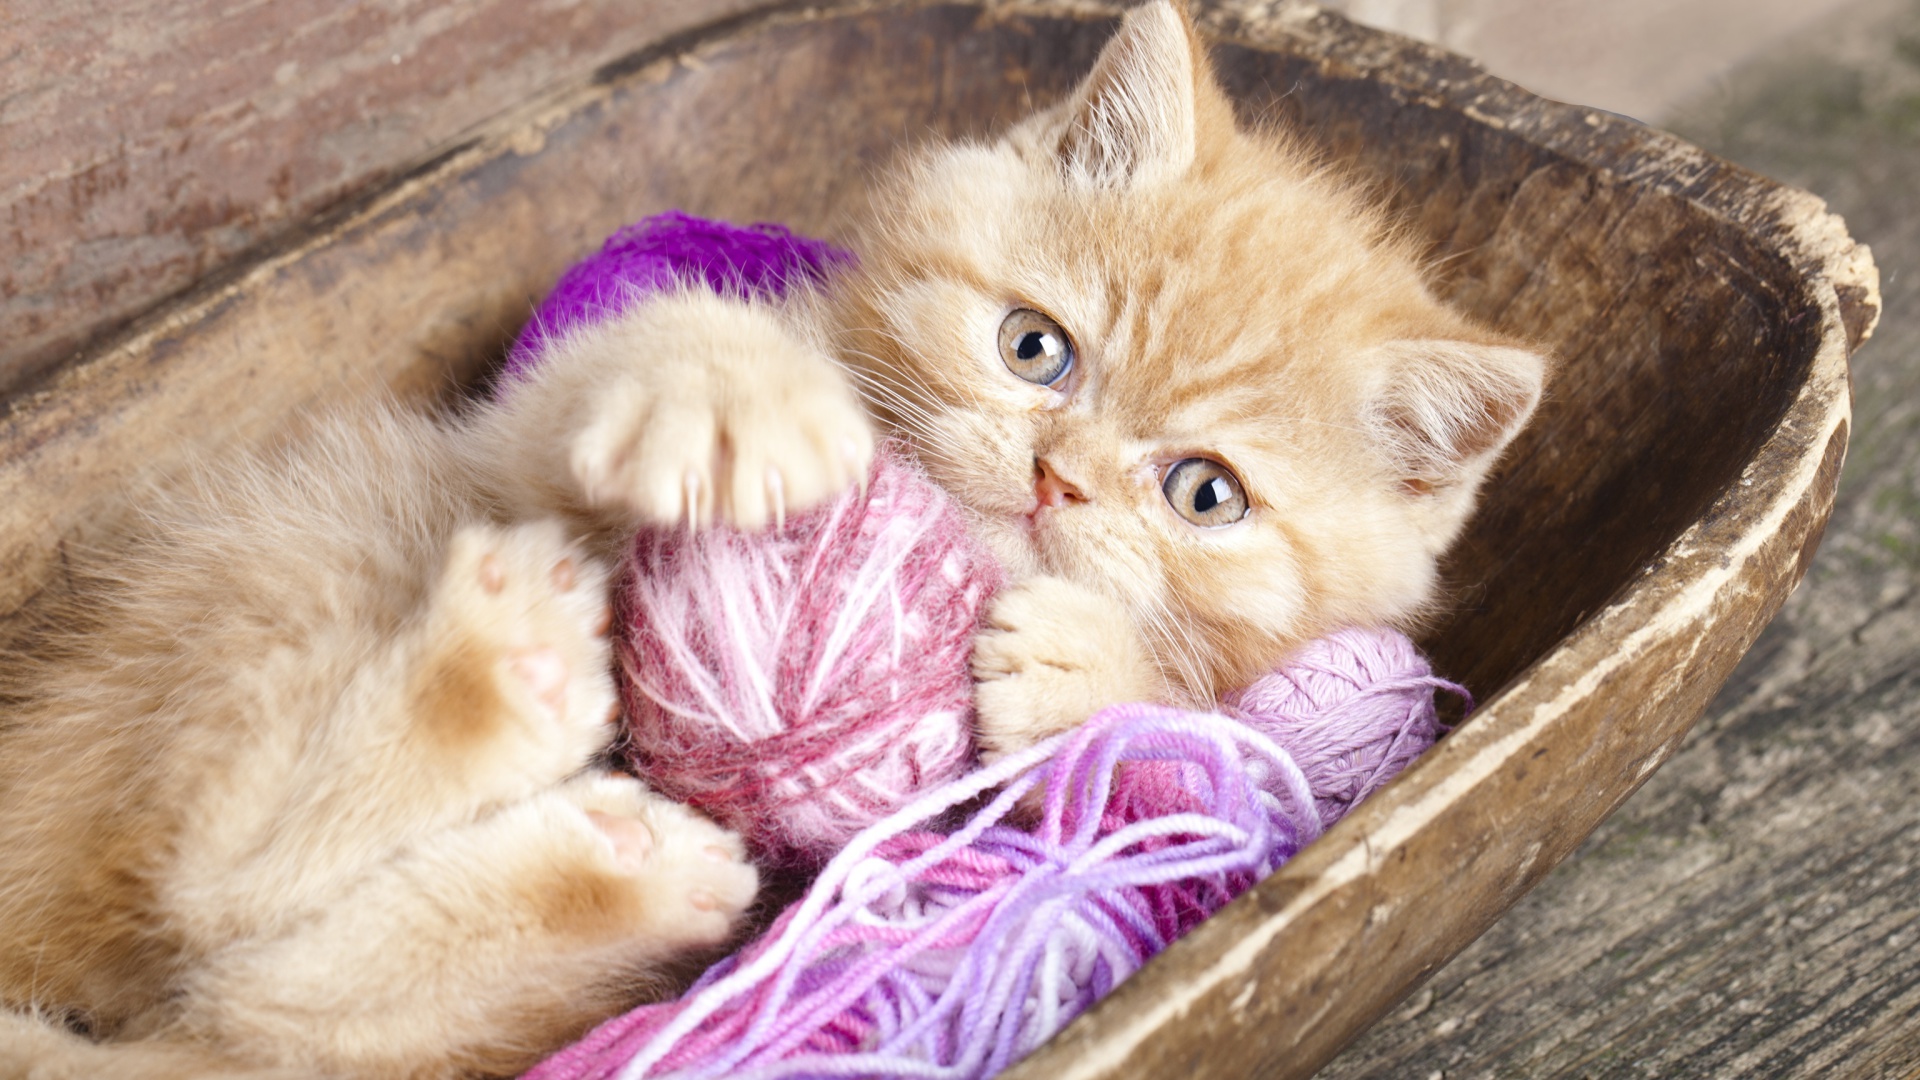 Обои Cute Kitten Playing With A Ball Of Yarn 1920x1080